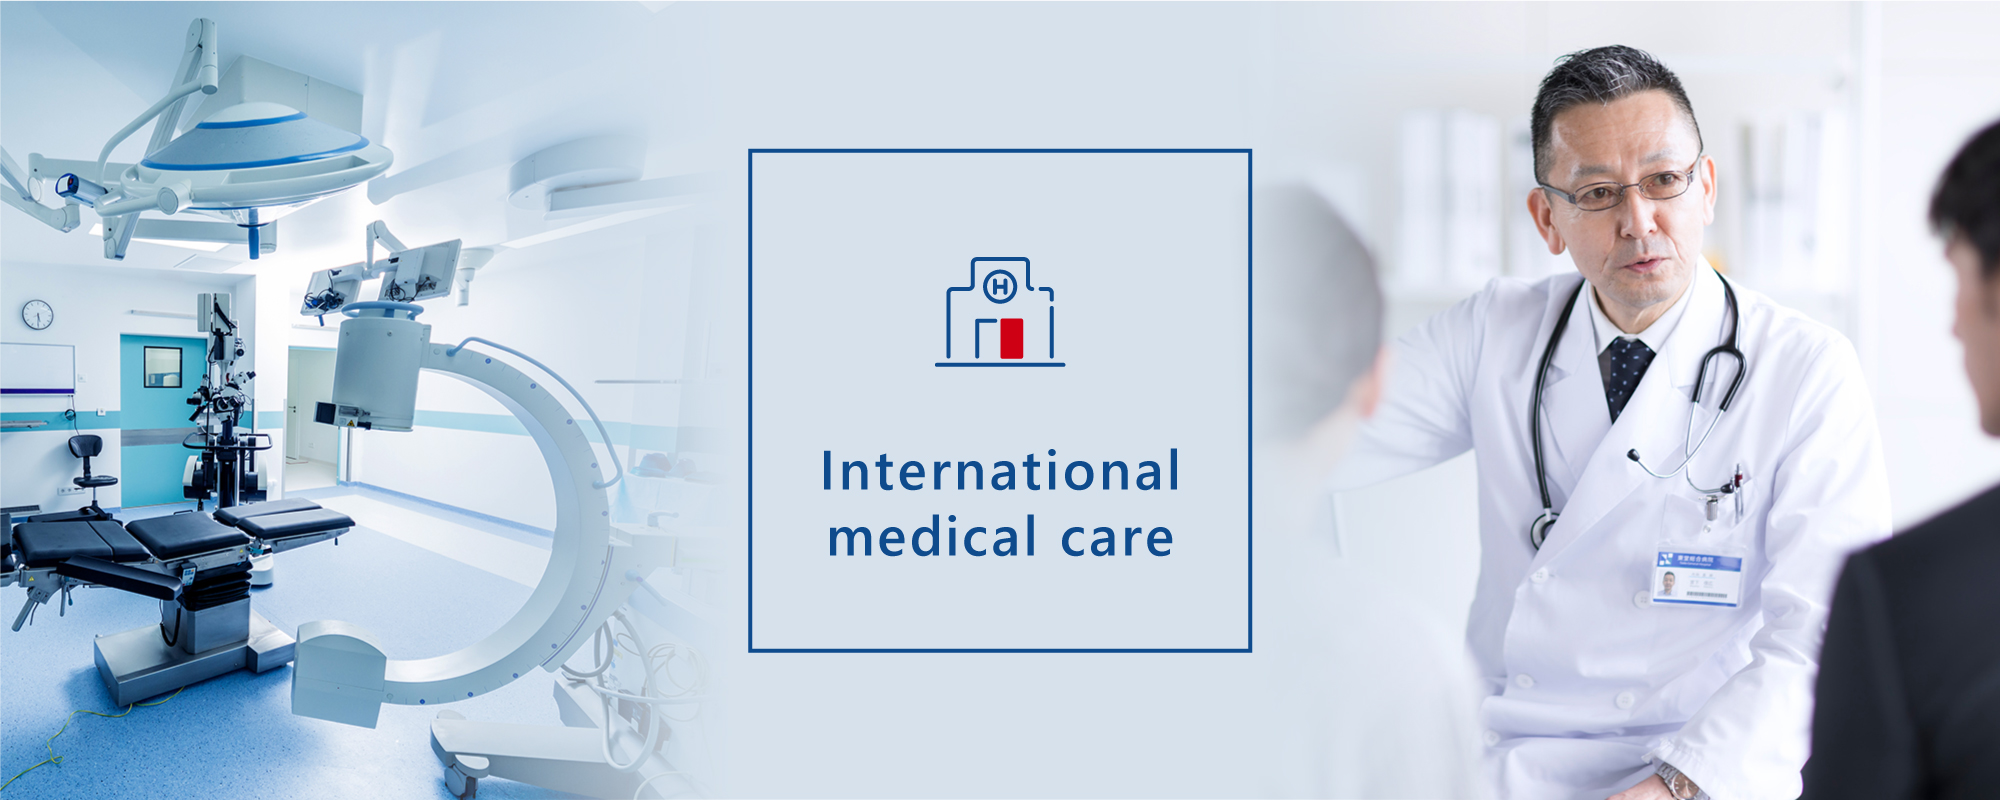 Perawatan medis internasional